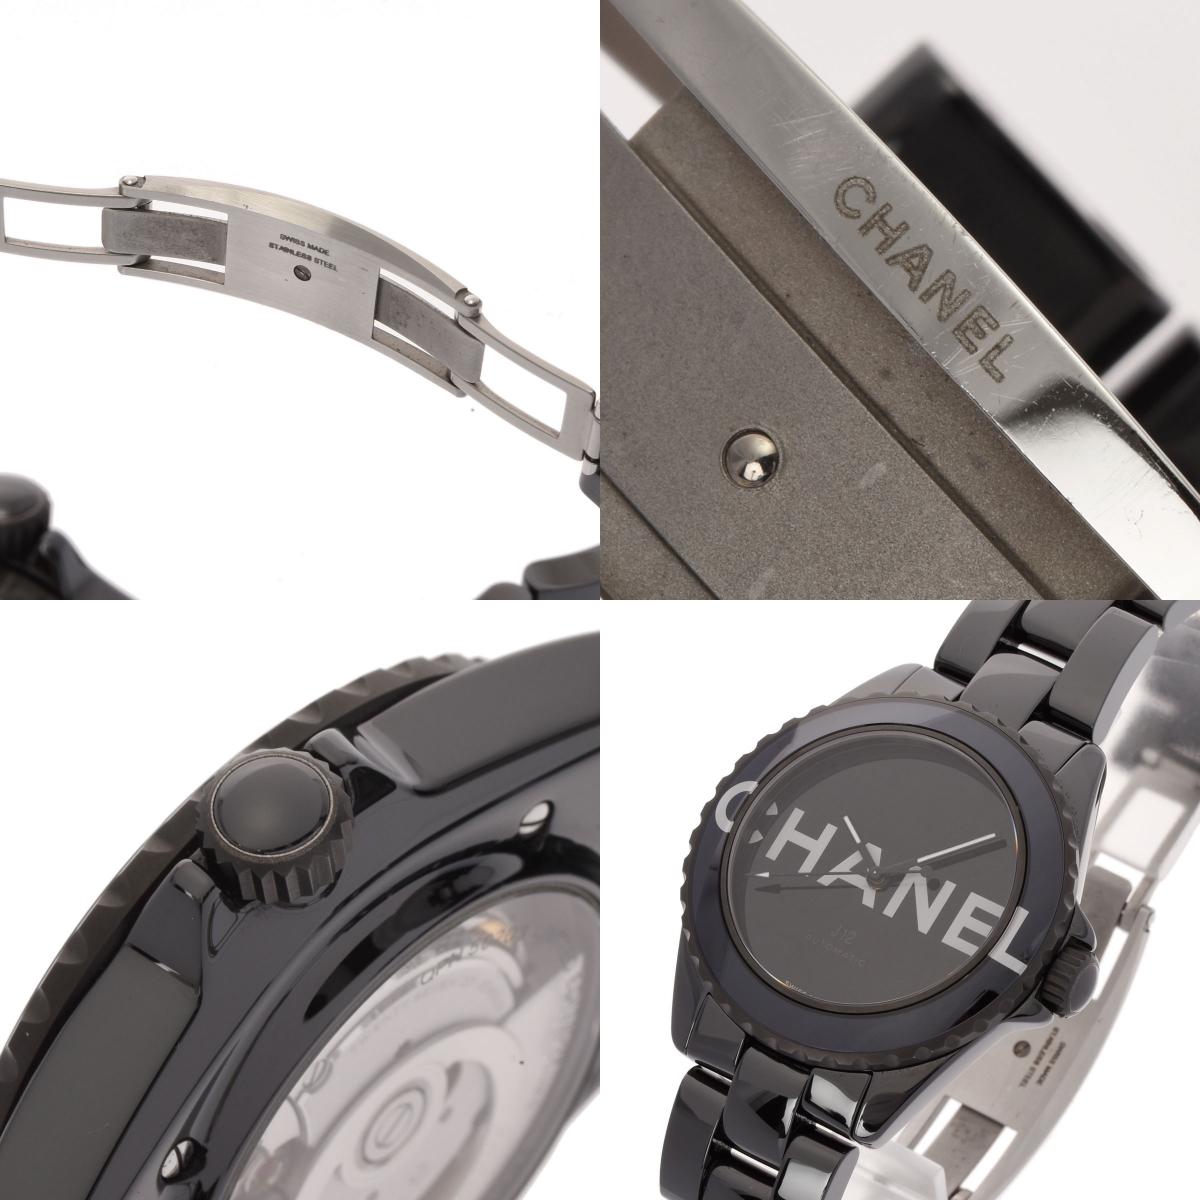 CHANEL J12 H7418 Black Wristwatch